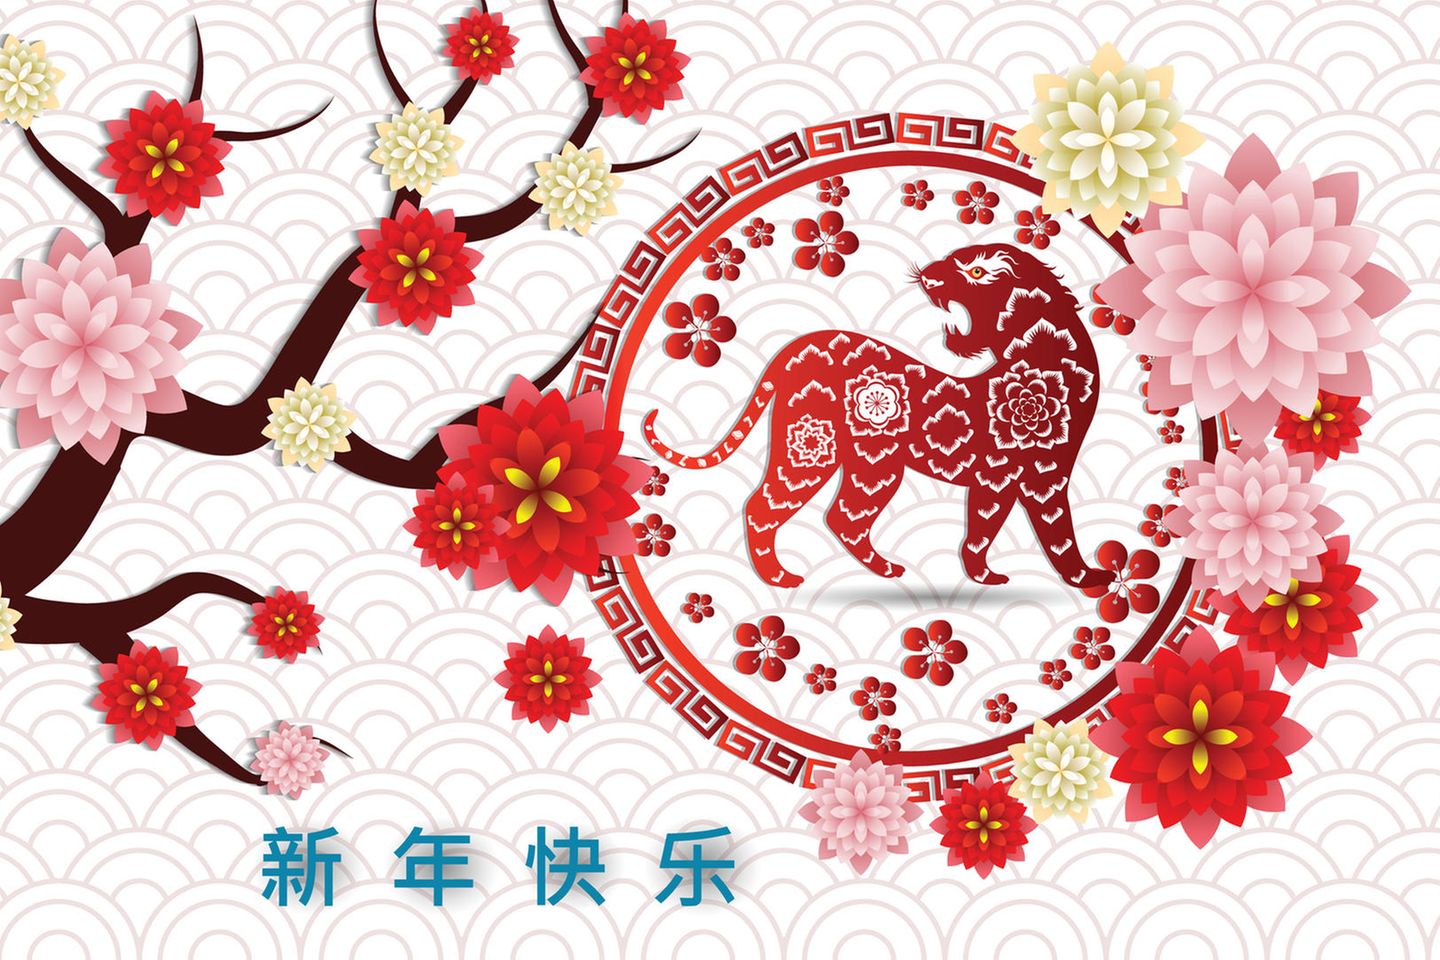 Jahr des Wassertigers: Das chinesische Sternzeichen Tiger